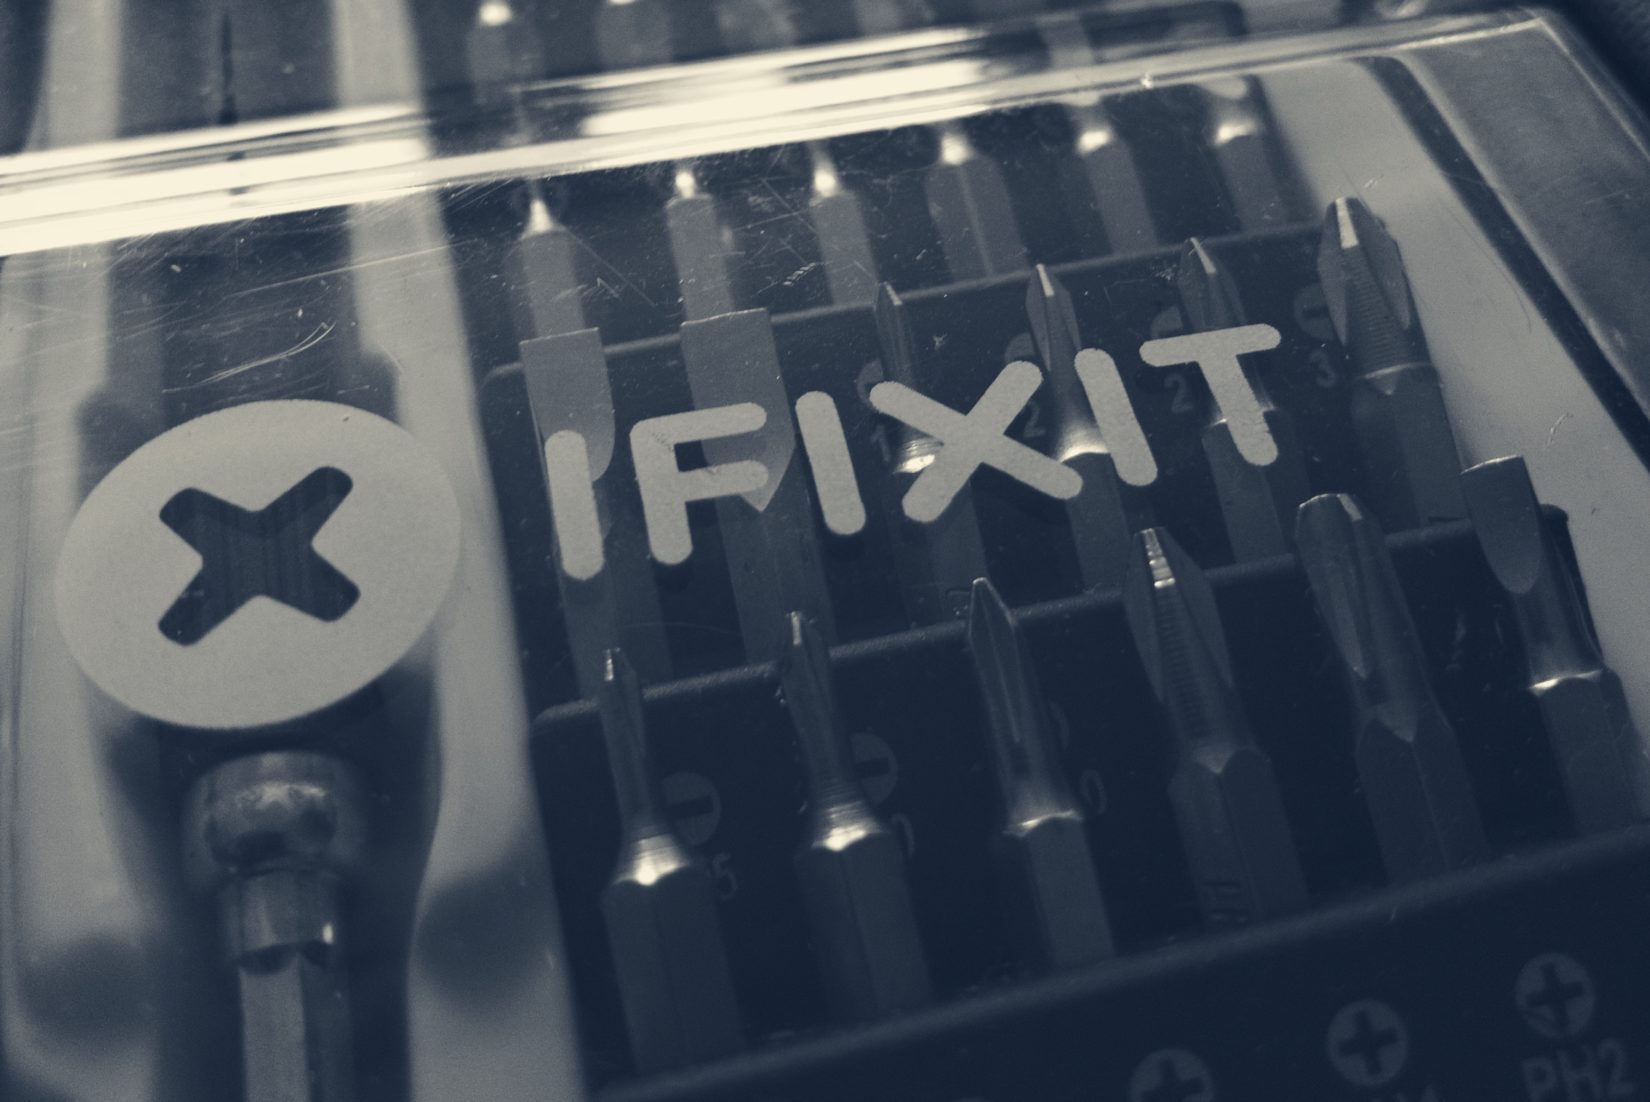 IFixit screwdriver set